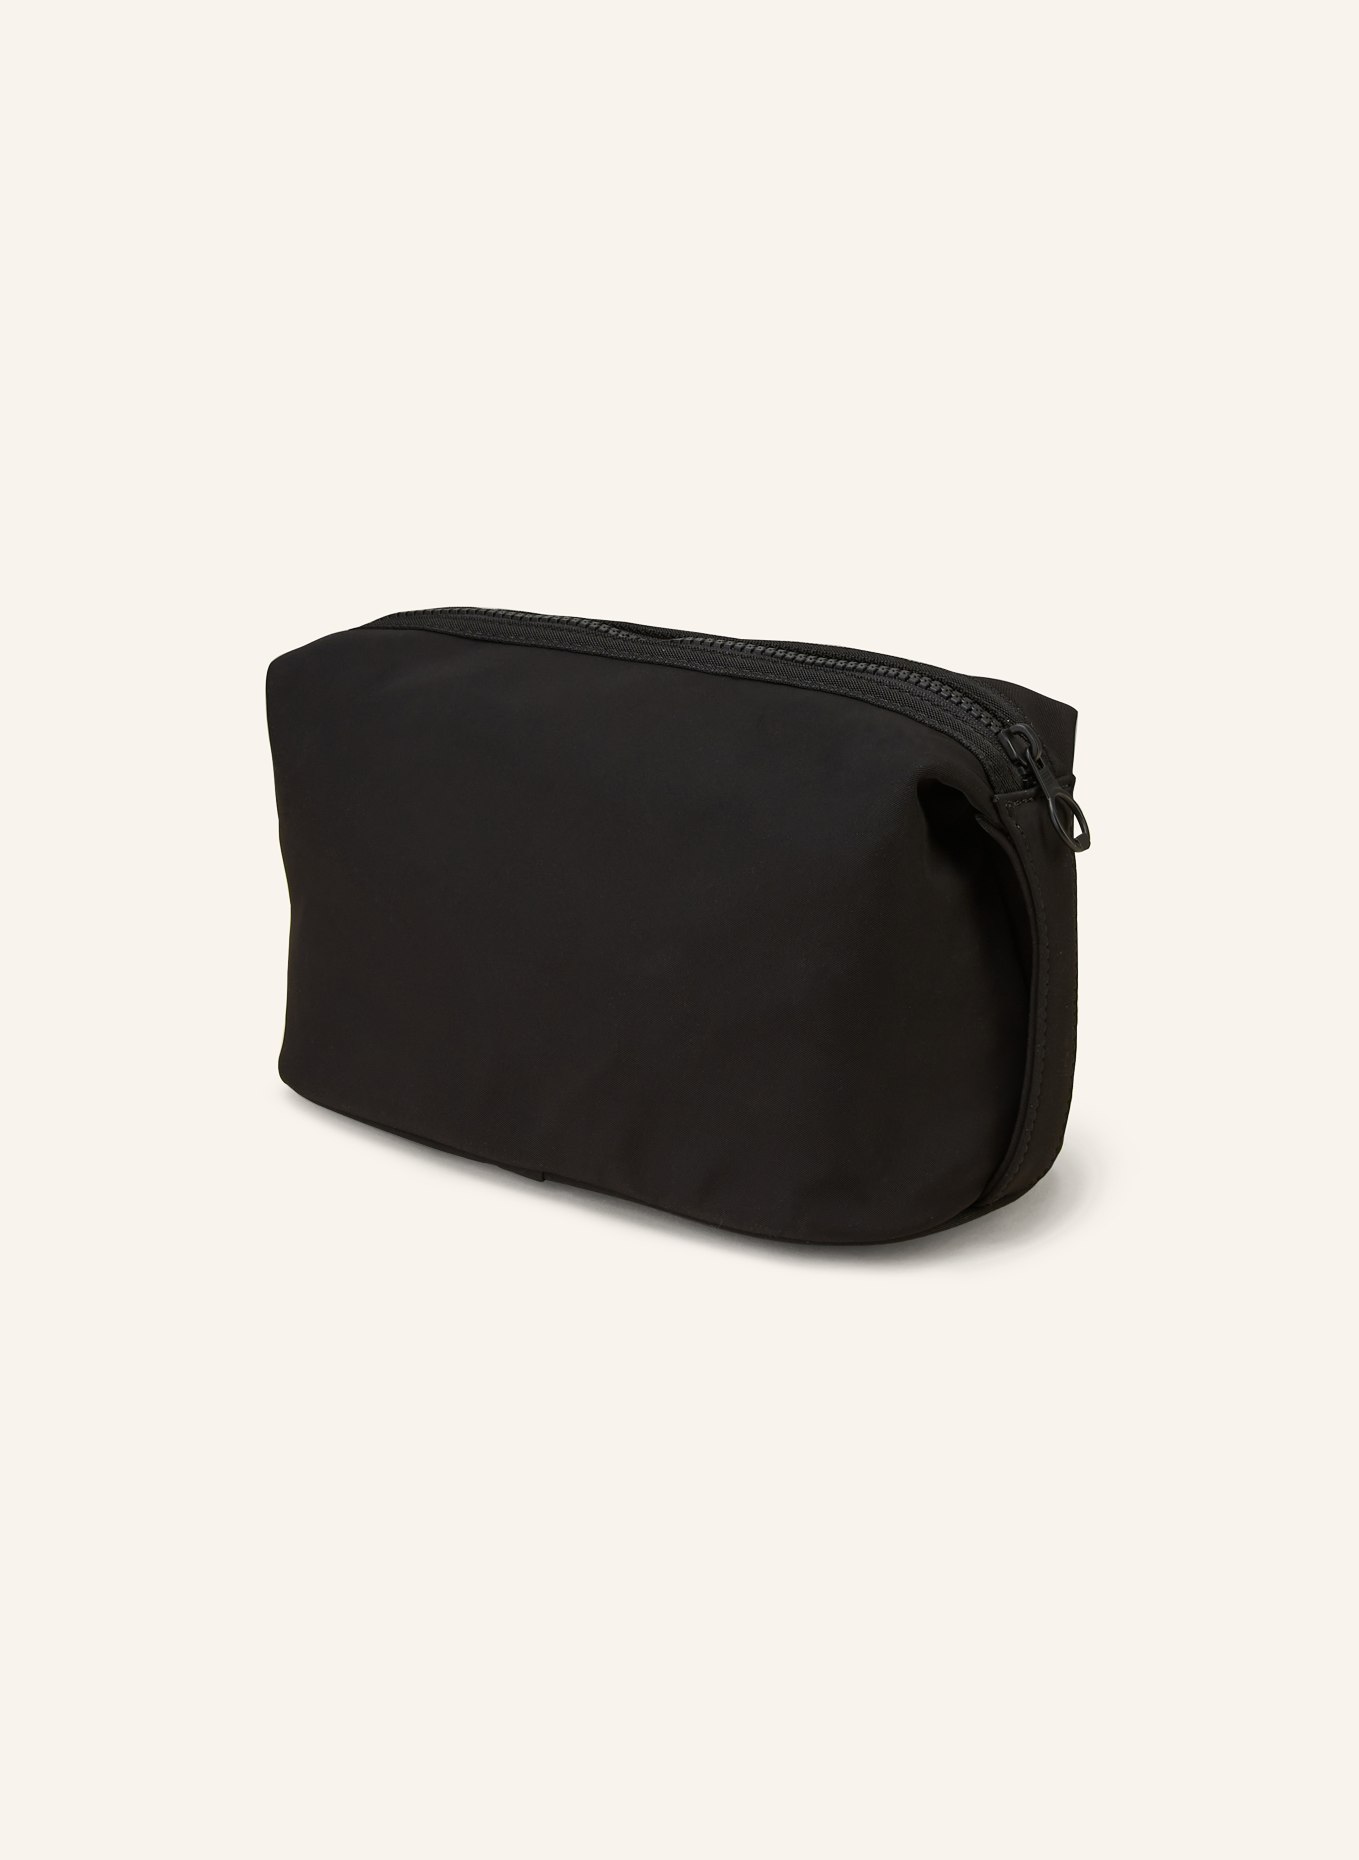 TOMMY HILFIGER Toiletry bag SKYLINE, Color: BLACK (Image 2)